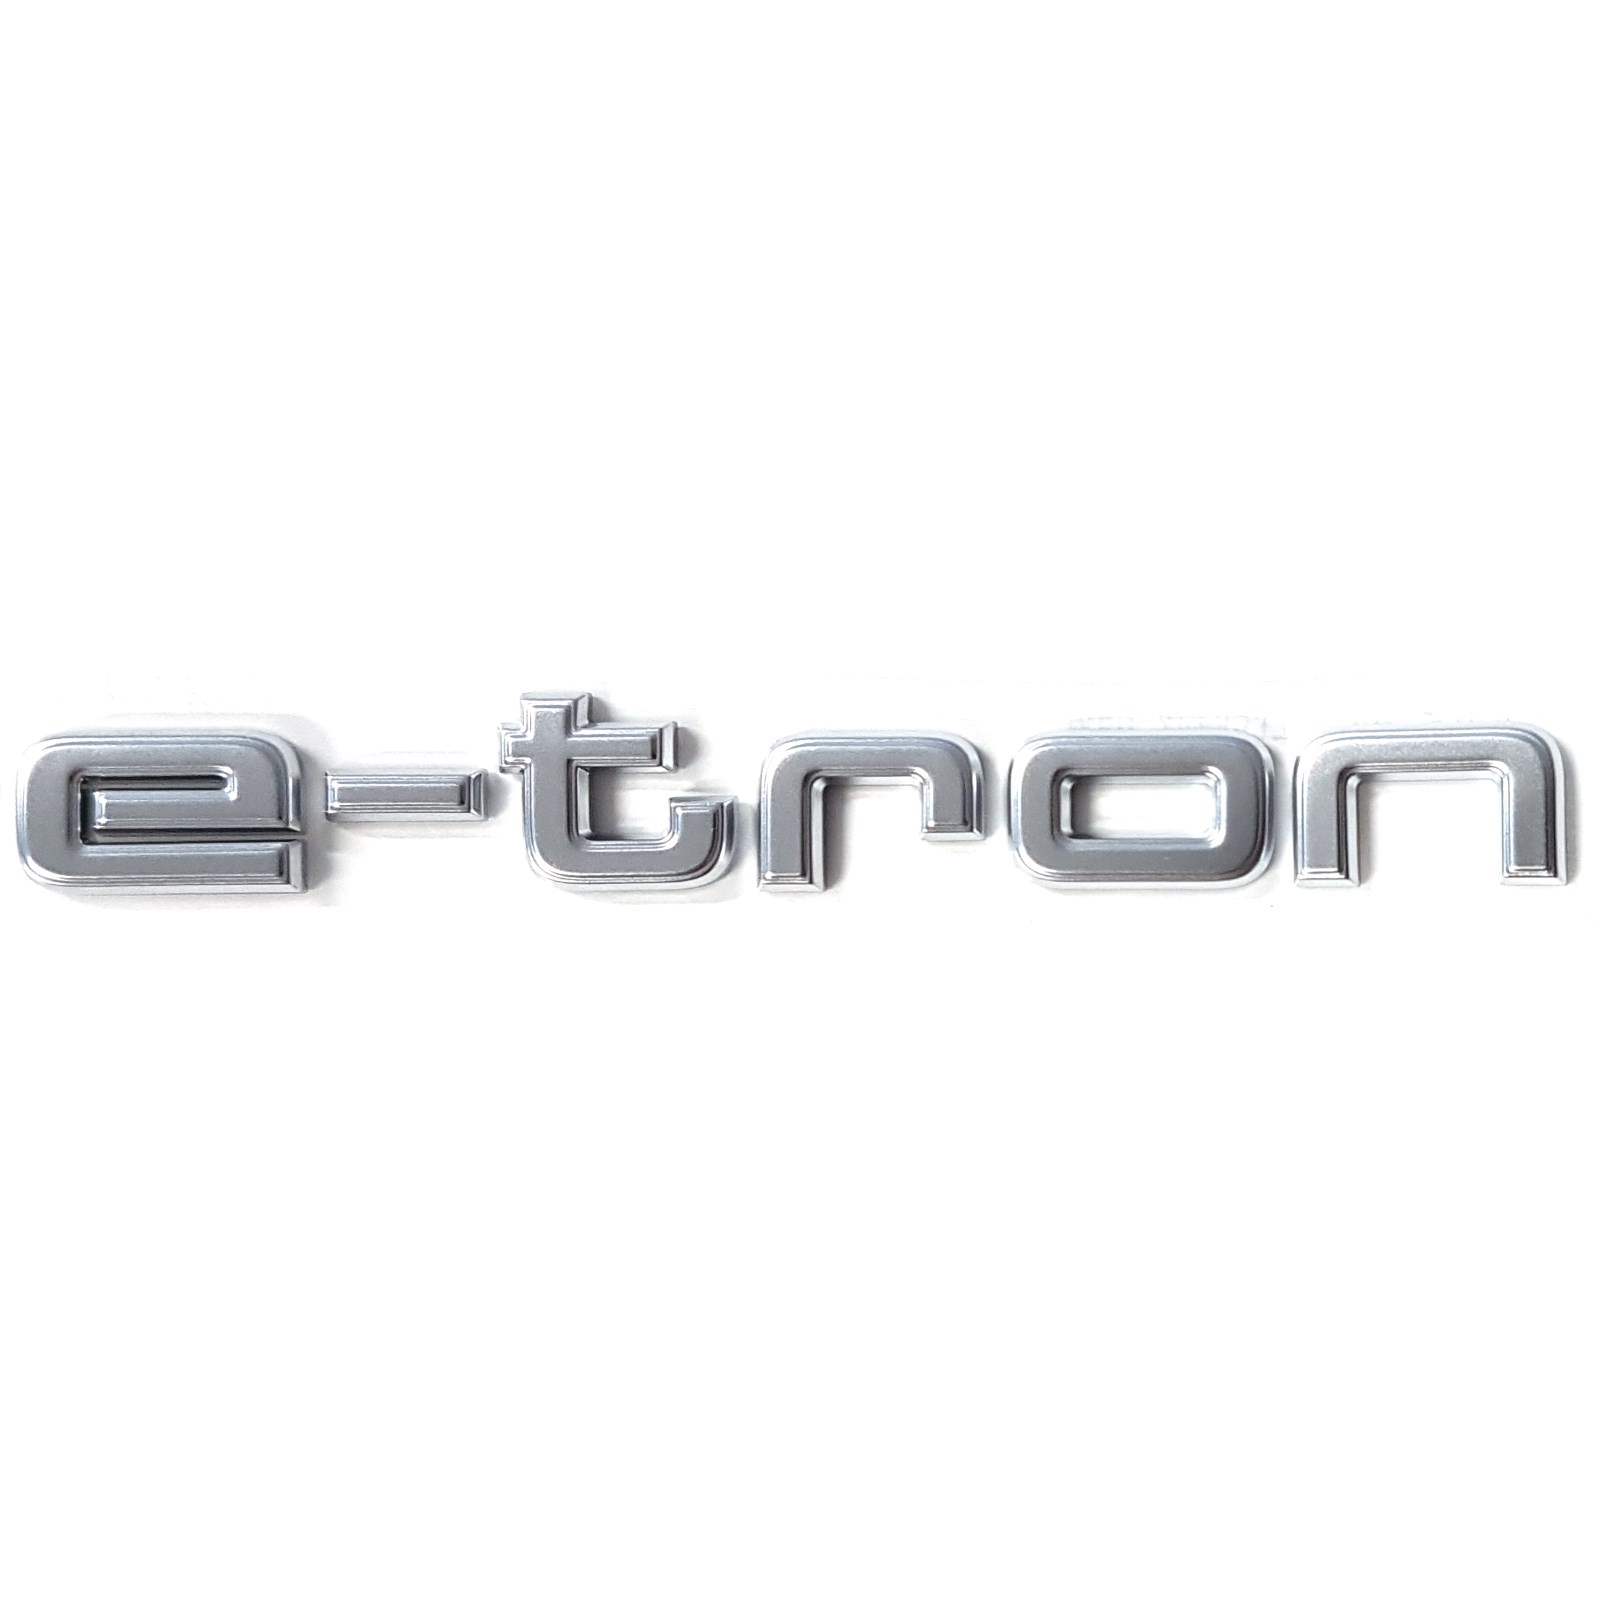 Original Audi Dekorfolien e-tron GT Schriftzug Folie Aufkleber schwarz matt  4J3064317041